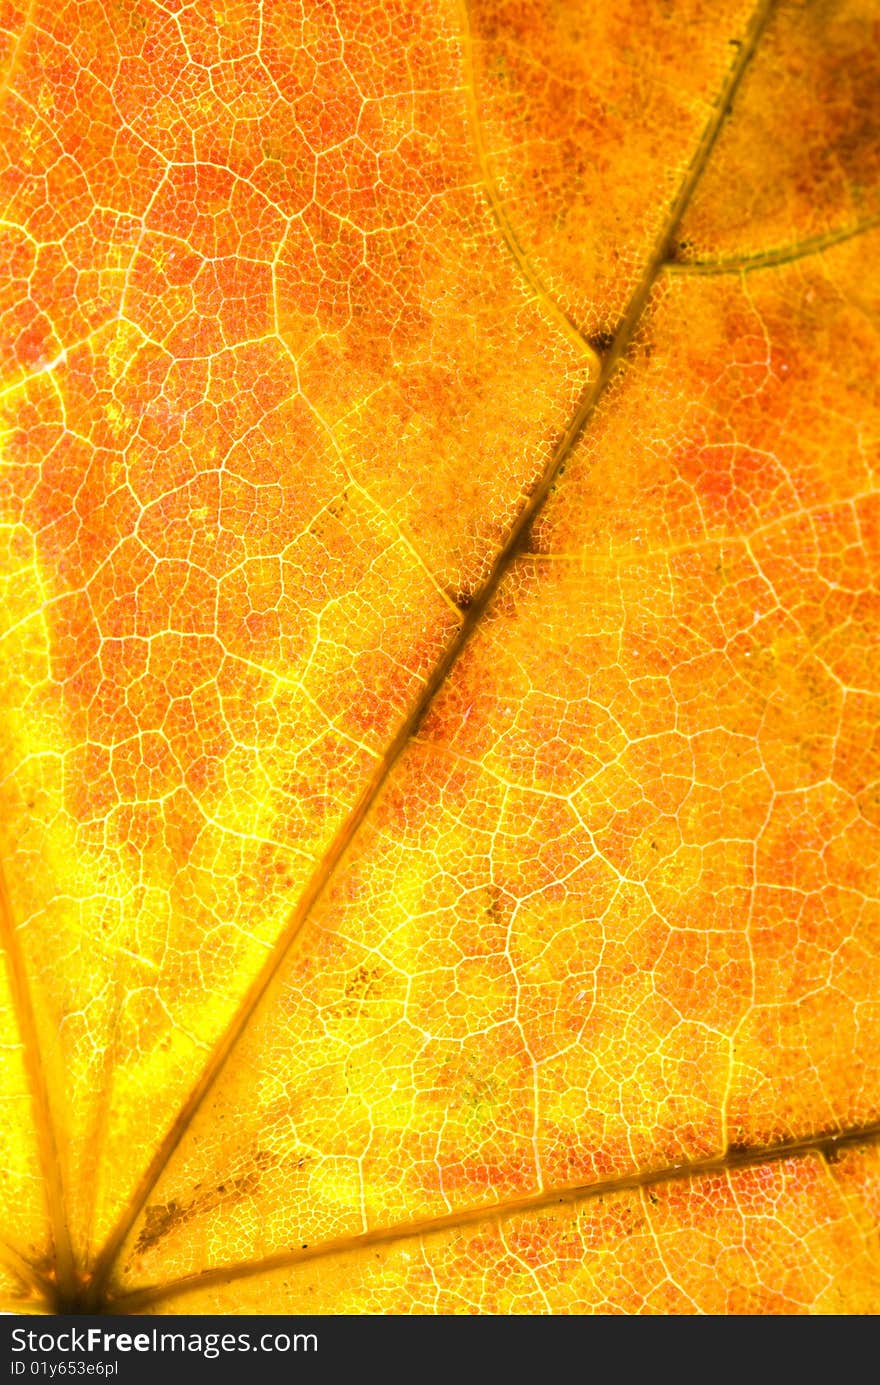 Autumn maple leaf textured background